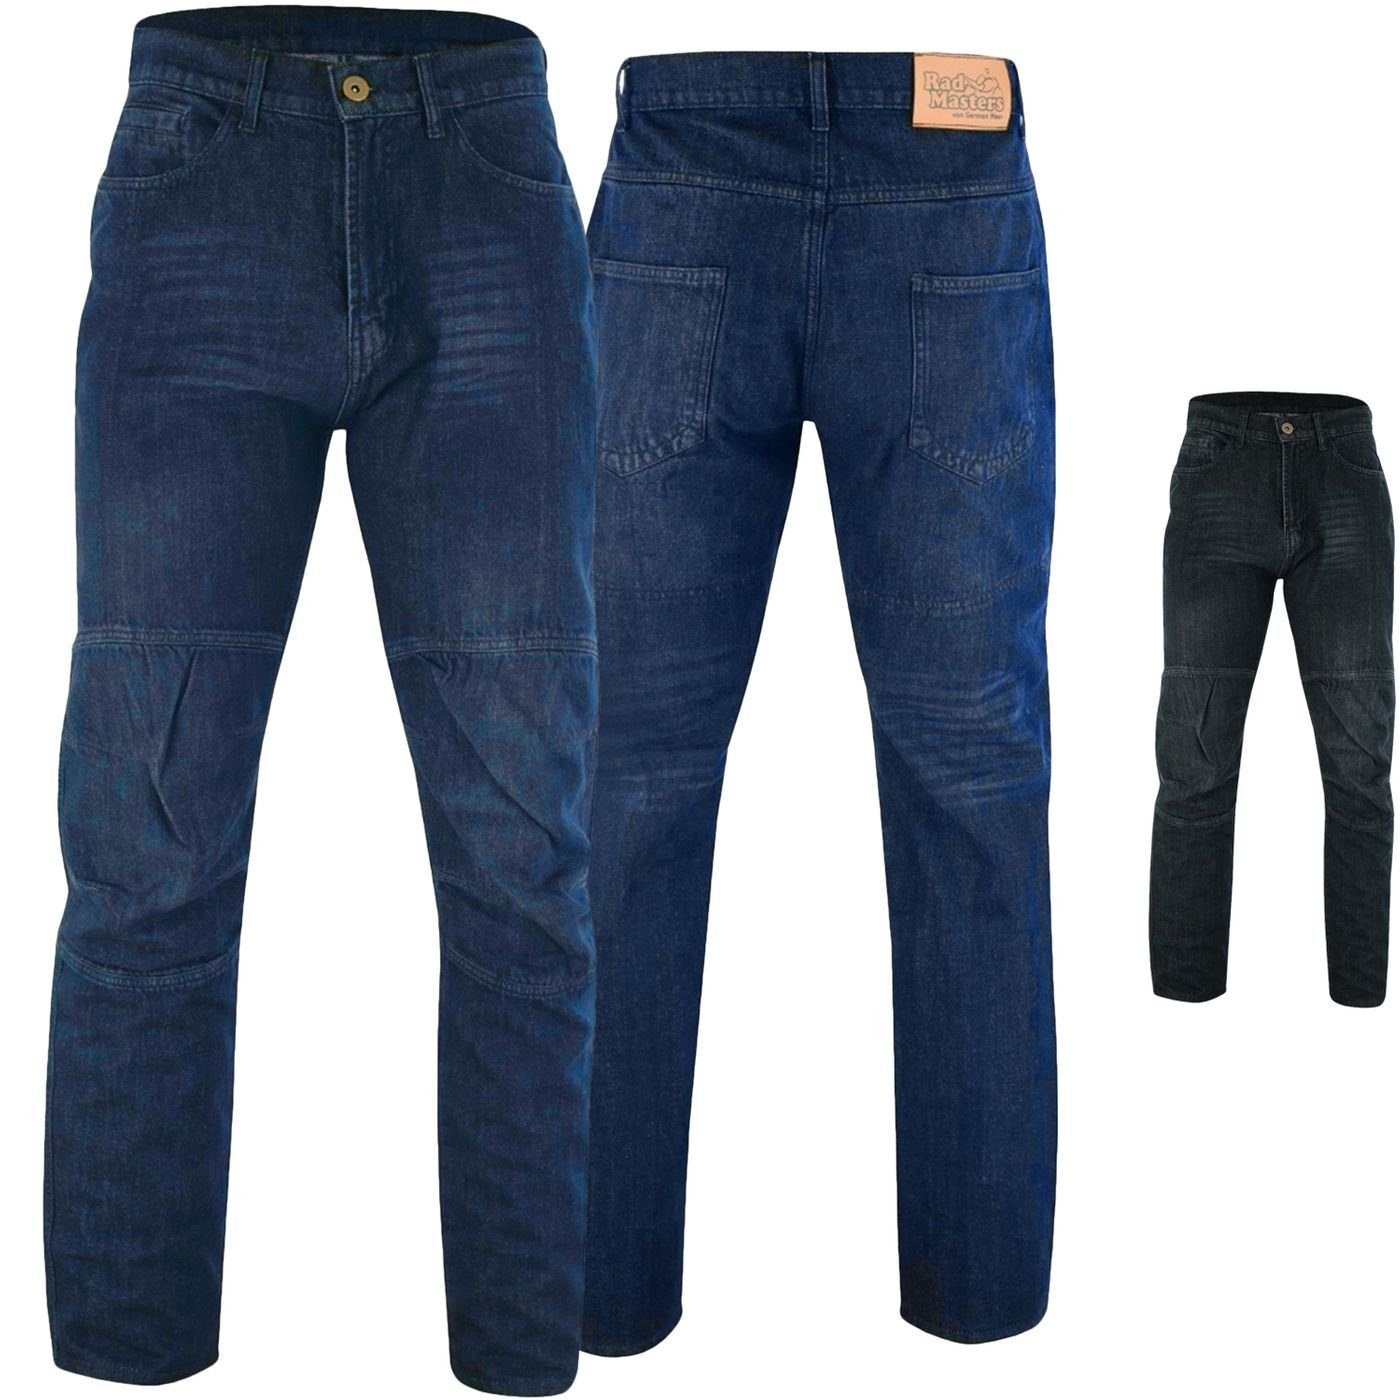 German Jeans-006 Protektoren Blau Motorradhose 280g/m2 Jeans Motorradhose Wear